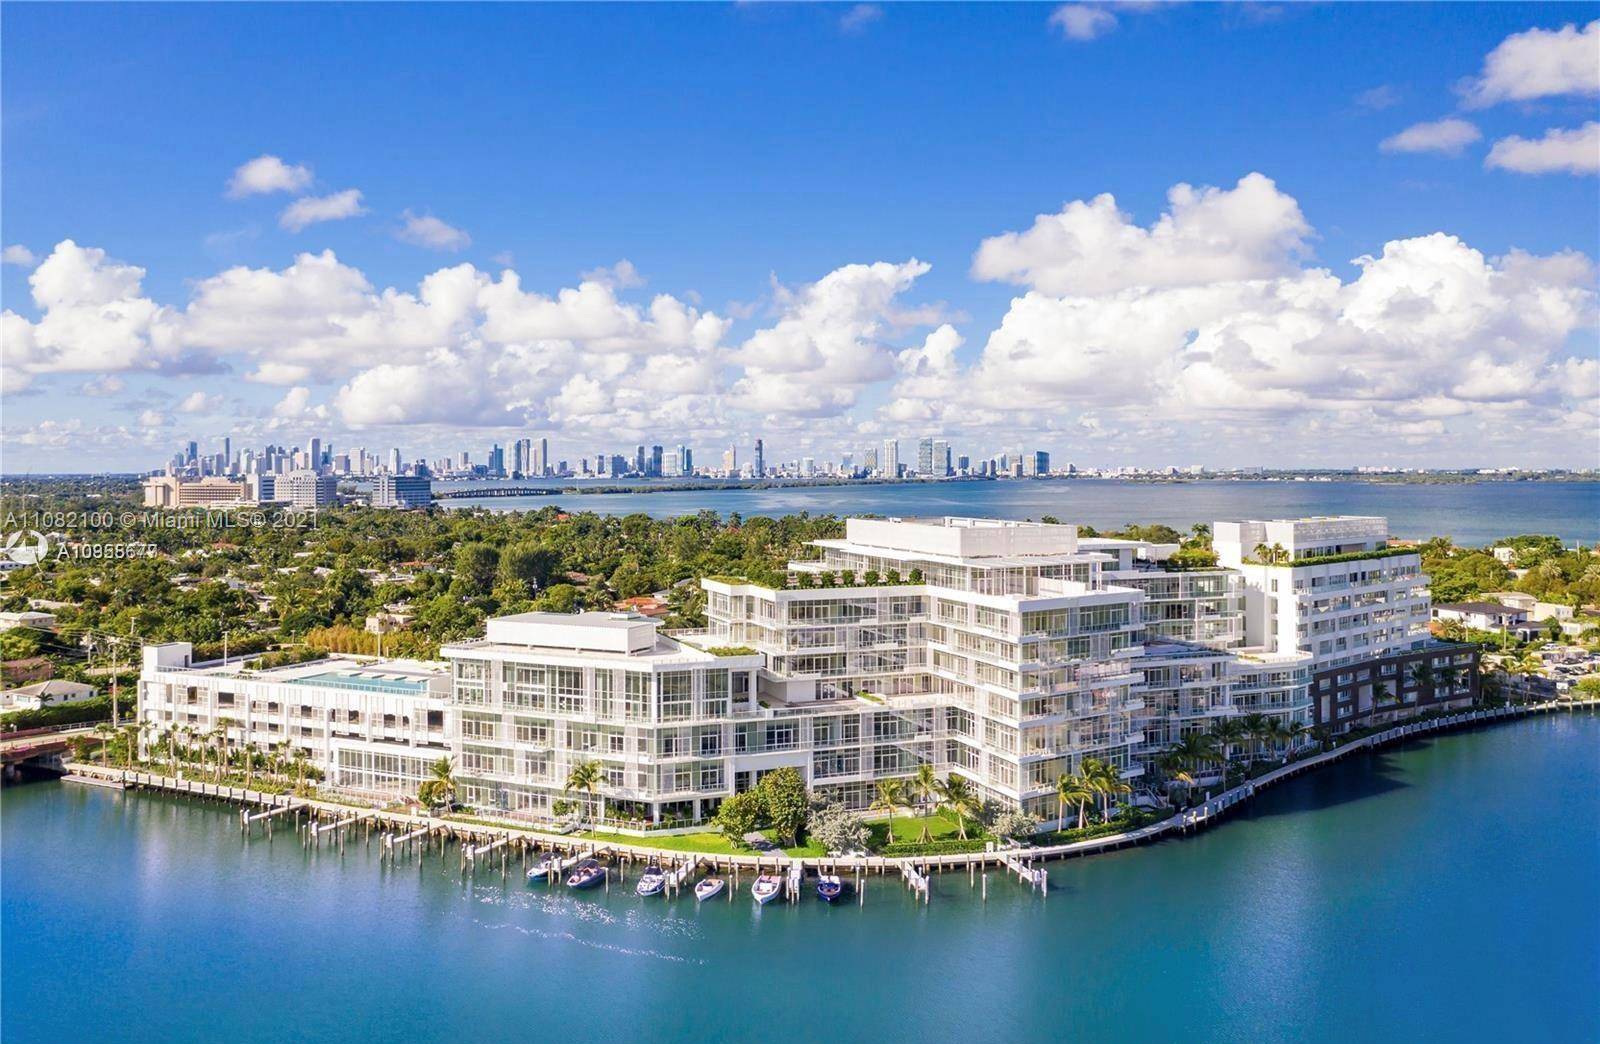 The Ritz Carlton Residences Miami Beach.